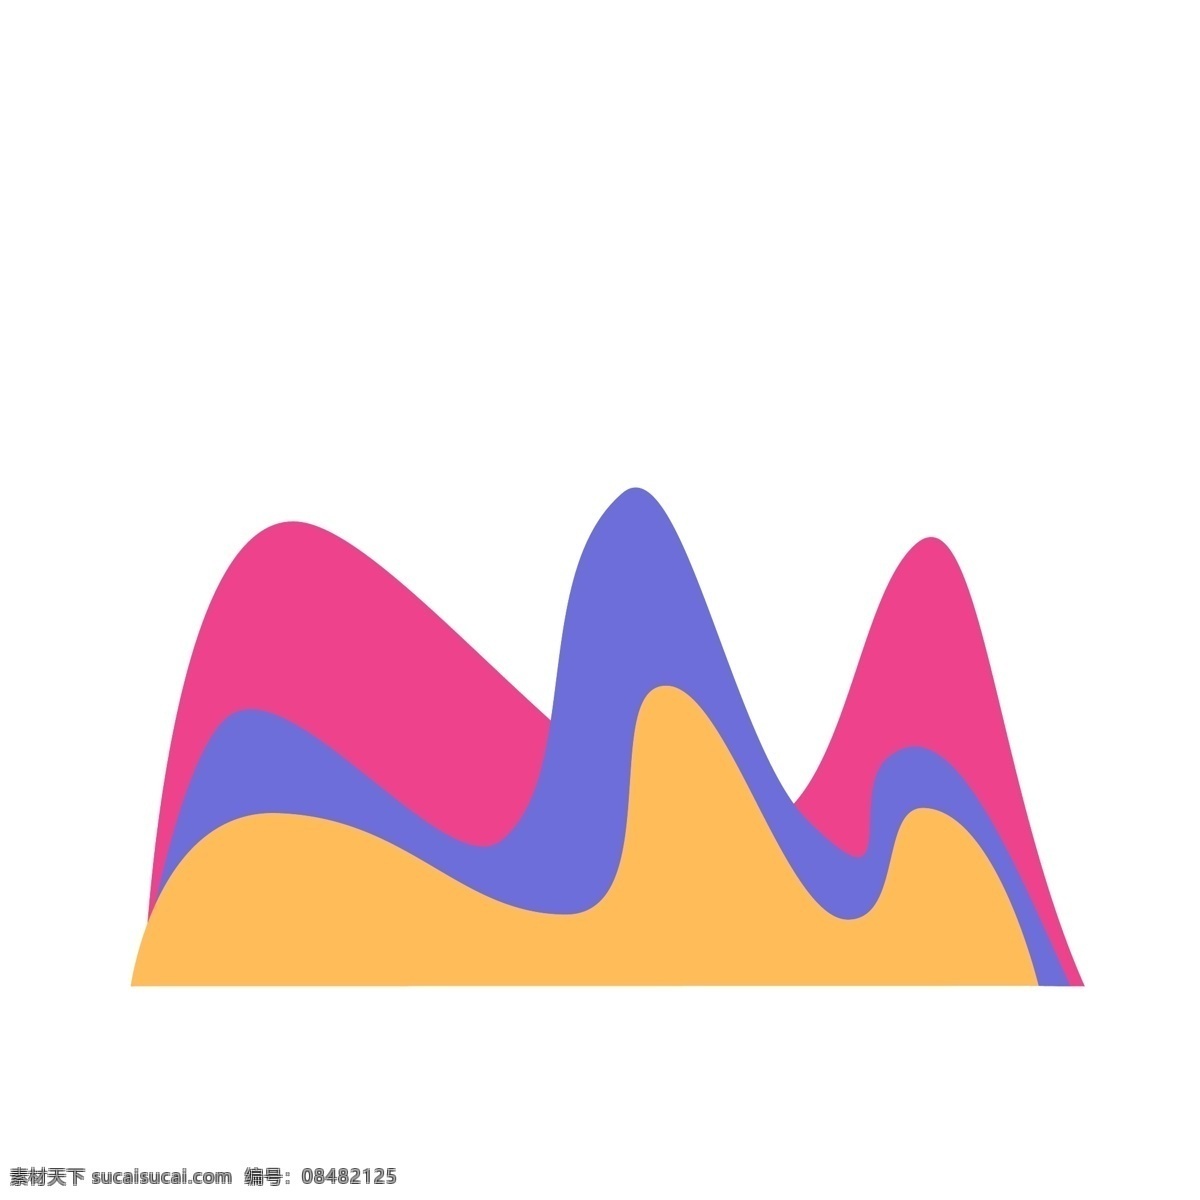 商务 矢量 数据 曲线 分析图 ppt图表 彩色信息图表 矢量信息图表 图表 饼 图 环形图表 科技